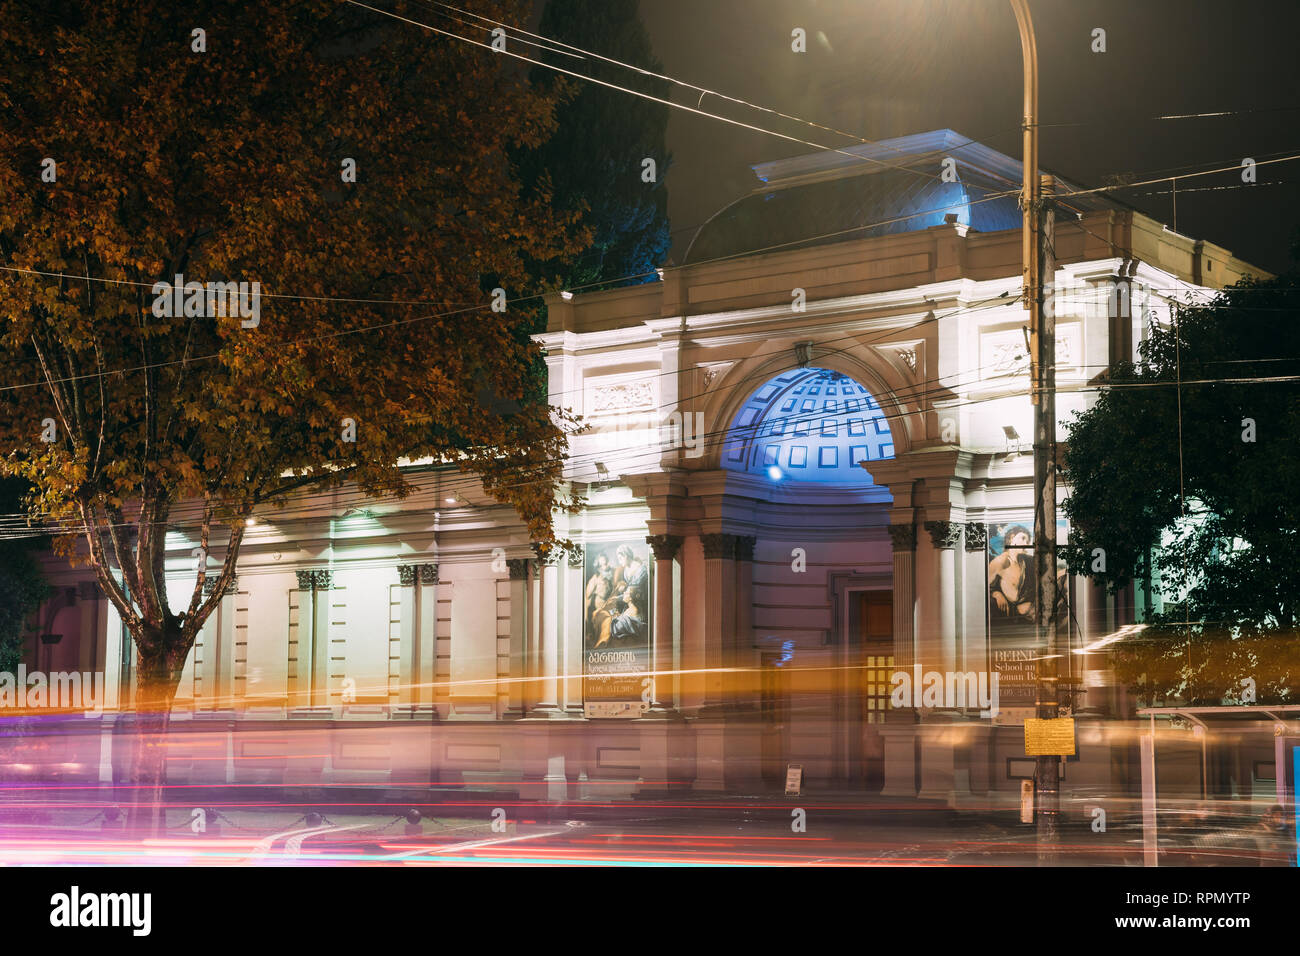 Tbilissi, Géorgie - 22 novembre 2018 : Vue de la nuit de la National Gallery de l'Avenue Rustaveli Banque D'Images